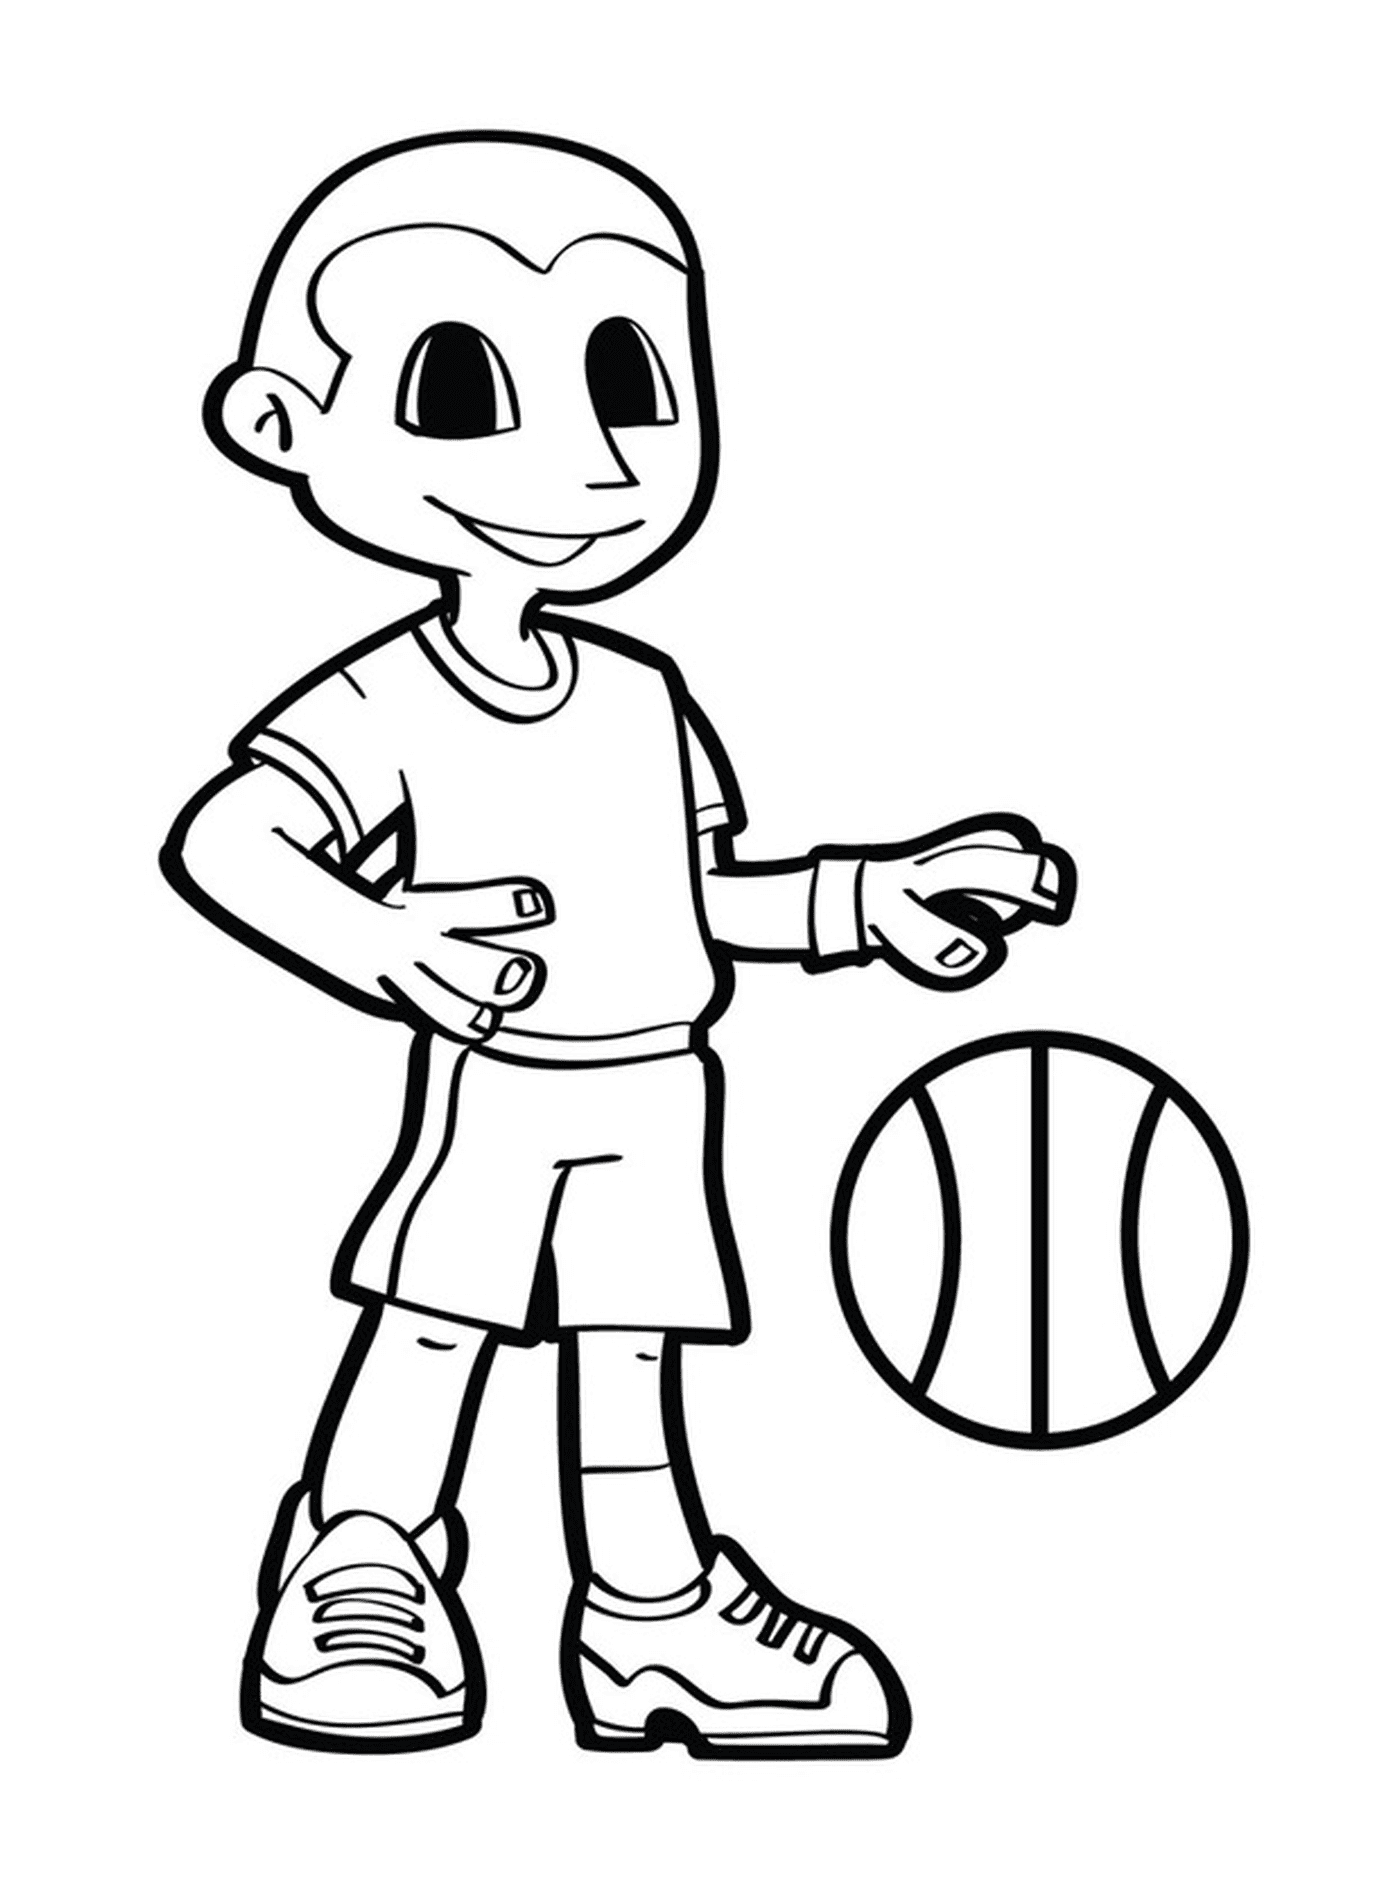   Garçon sportif jouant au basket 